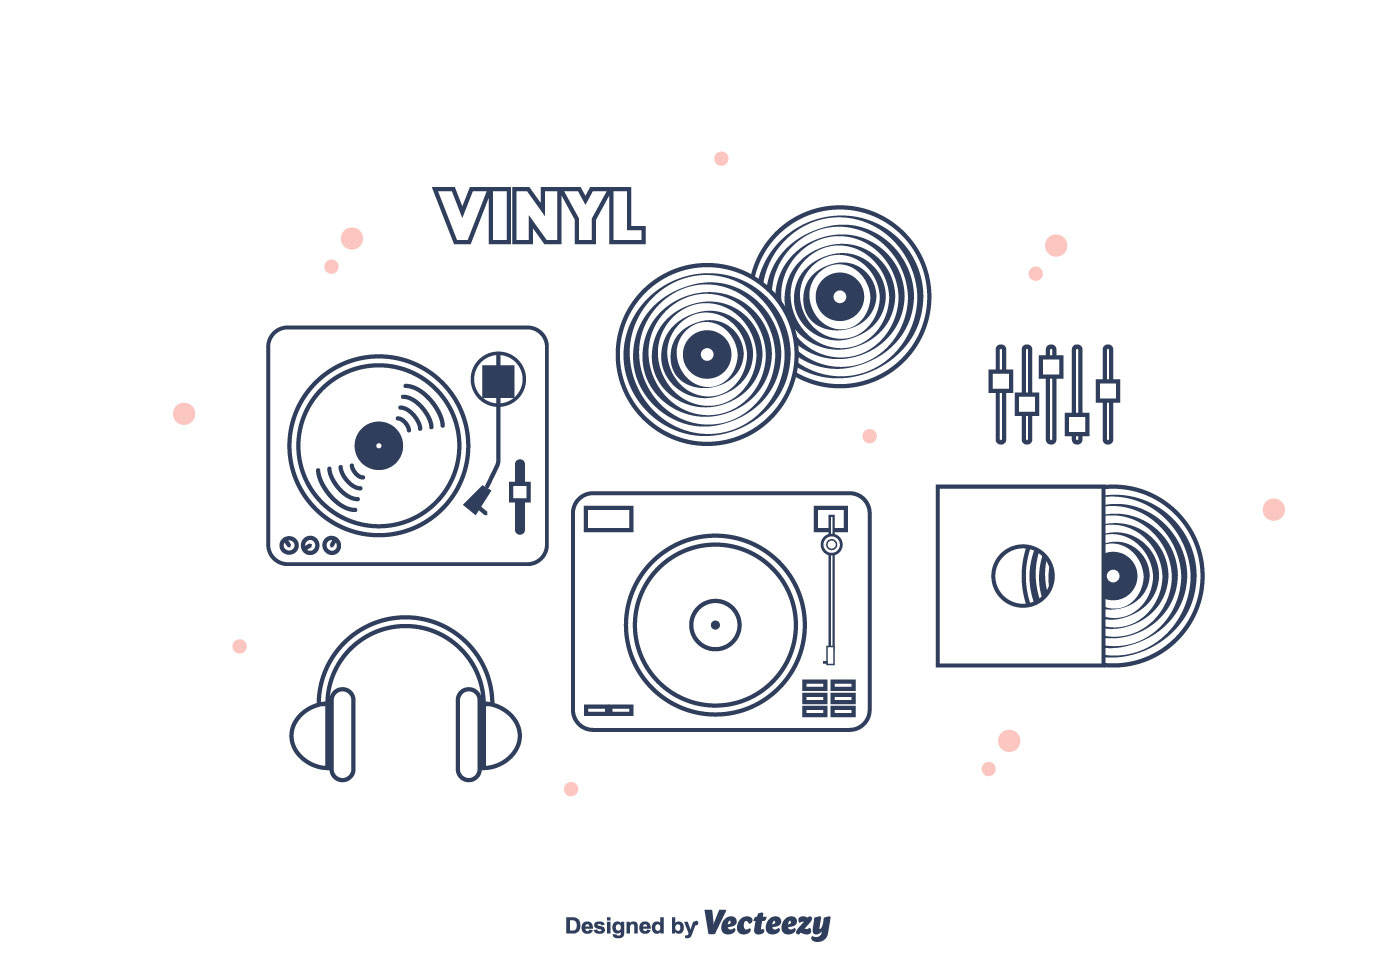 Download Vinyl Vector Icons 115674 Vector Art at Vecteezy